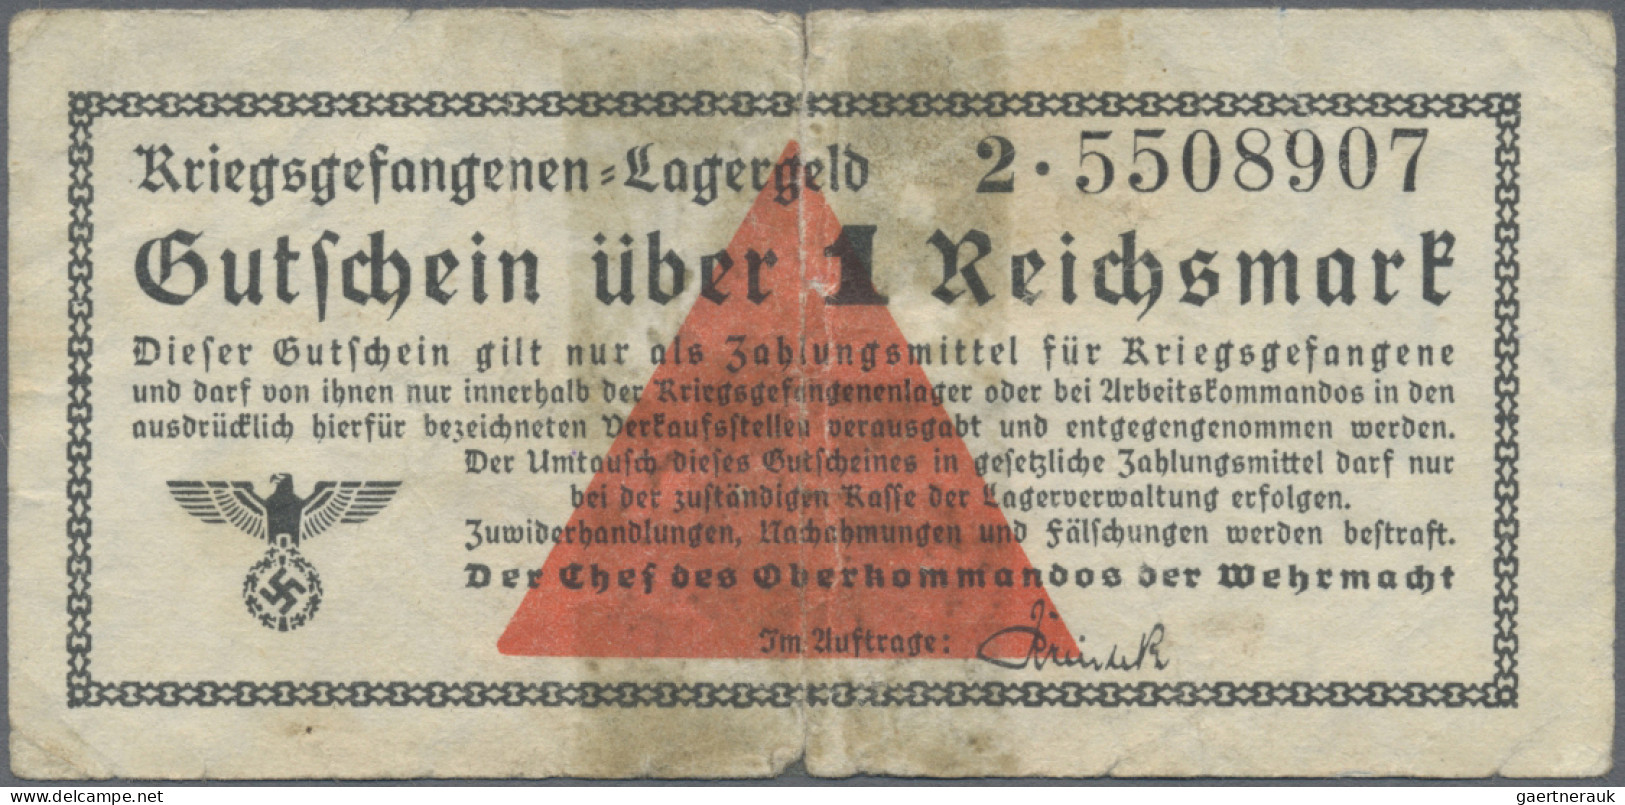 Deutschland - Deutsches Reich bis 1945: Lot mit 24 Banknoten, dabei Behelfszahlu